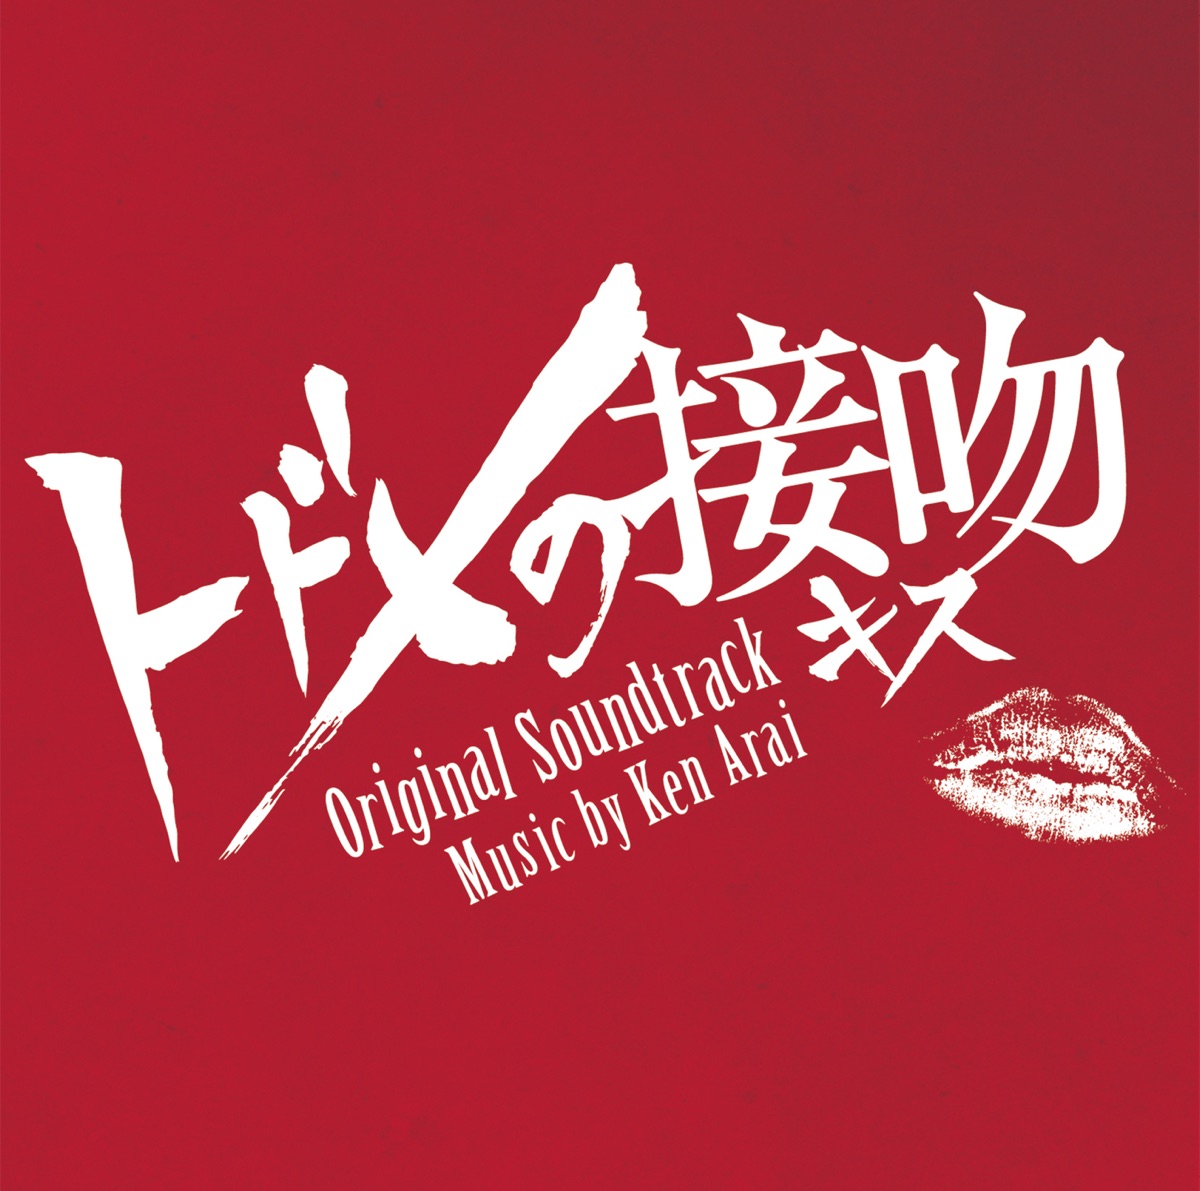 Ken Araiの「フジテレビ系ドラマ「失恋ショコラティエ」オリジナルサウンドトラック」をApple Musicで